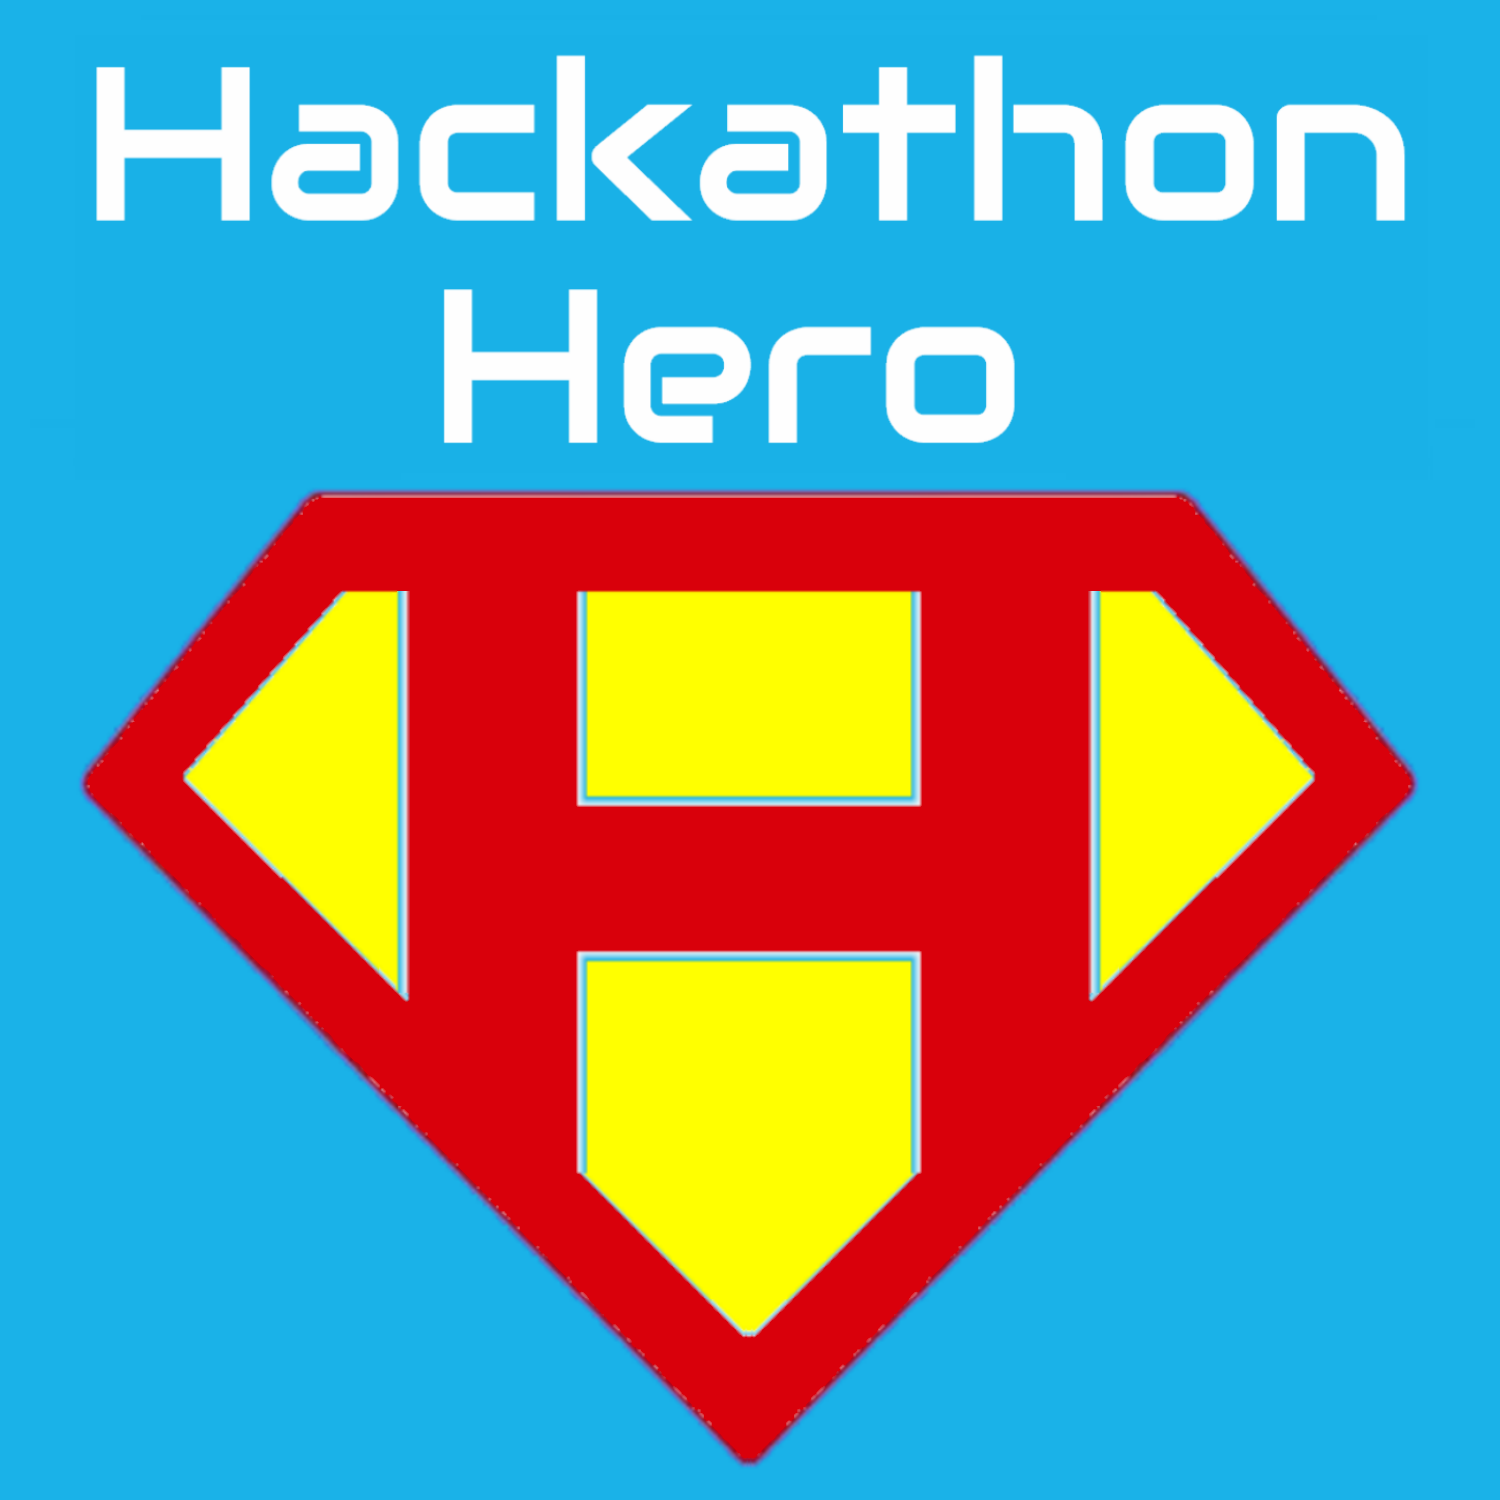 List of Hackathons